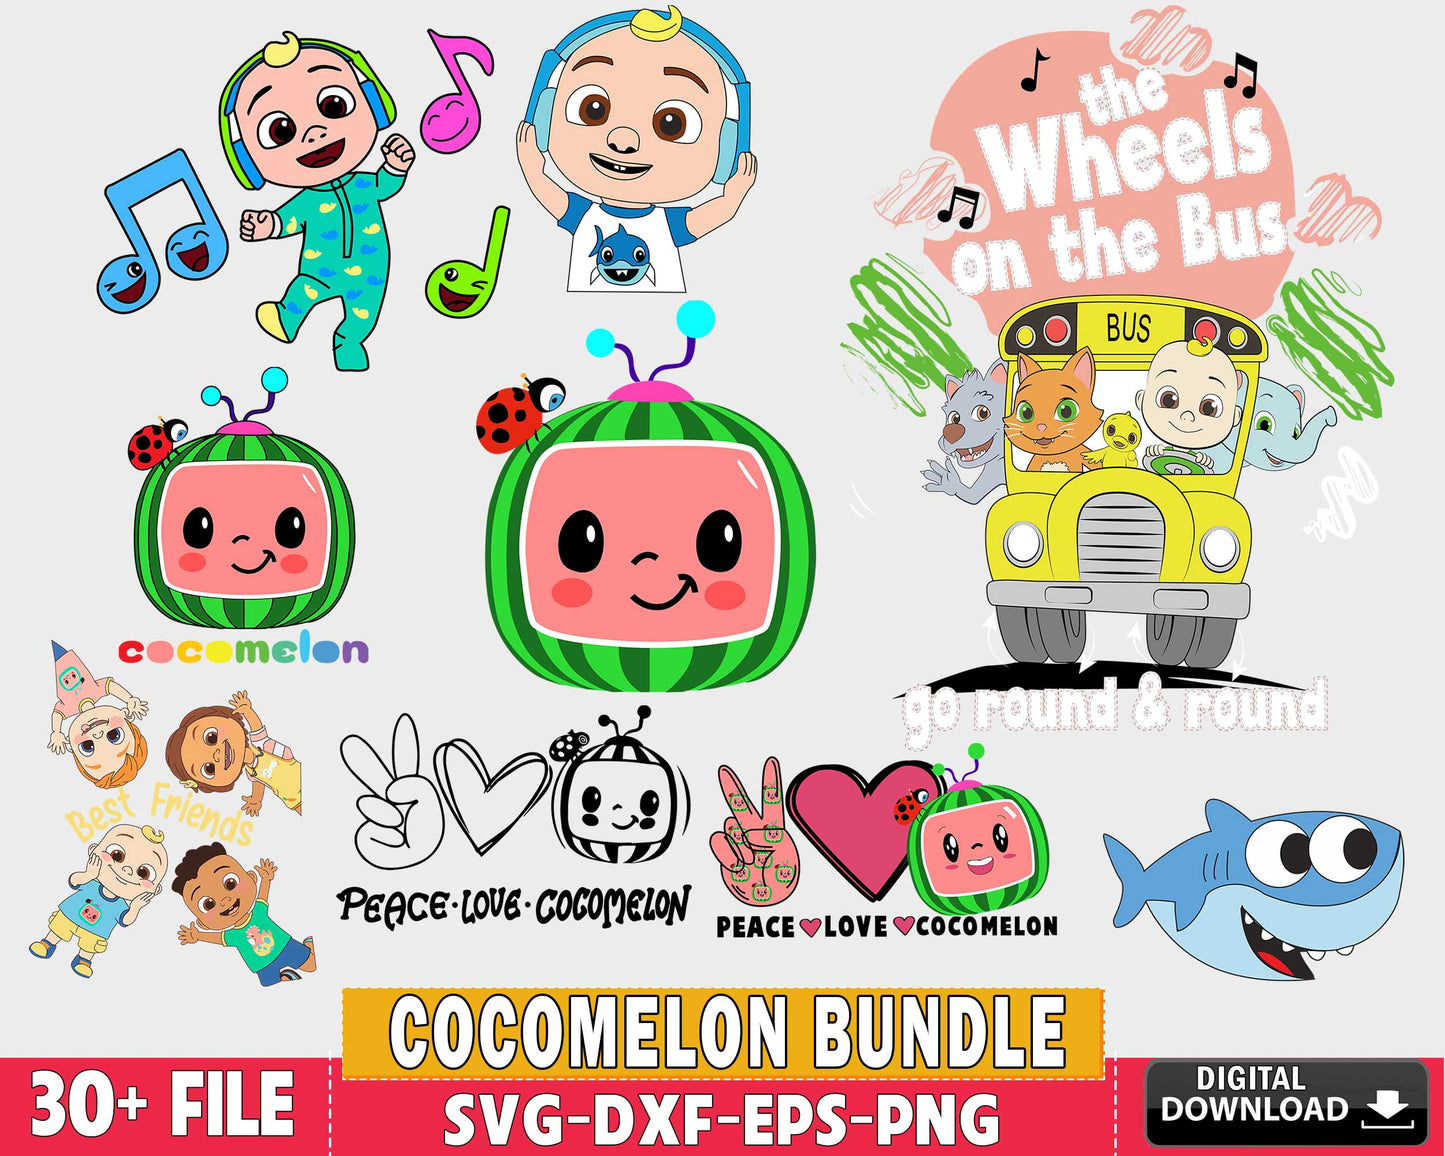 30+ file Cocomelon svg bundle , Cocomelon bundle SVG DXF EPS PNG , for ...